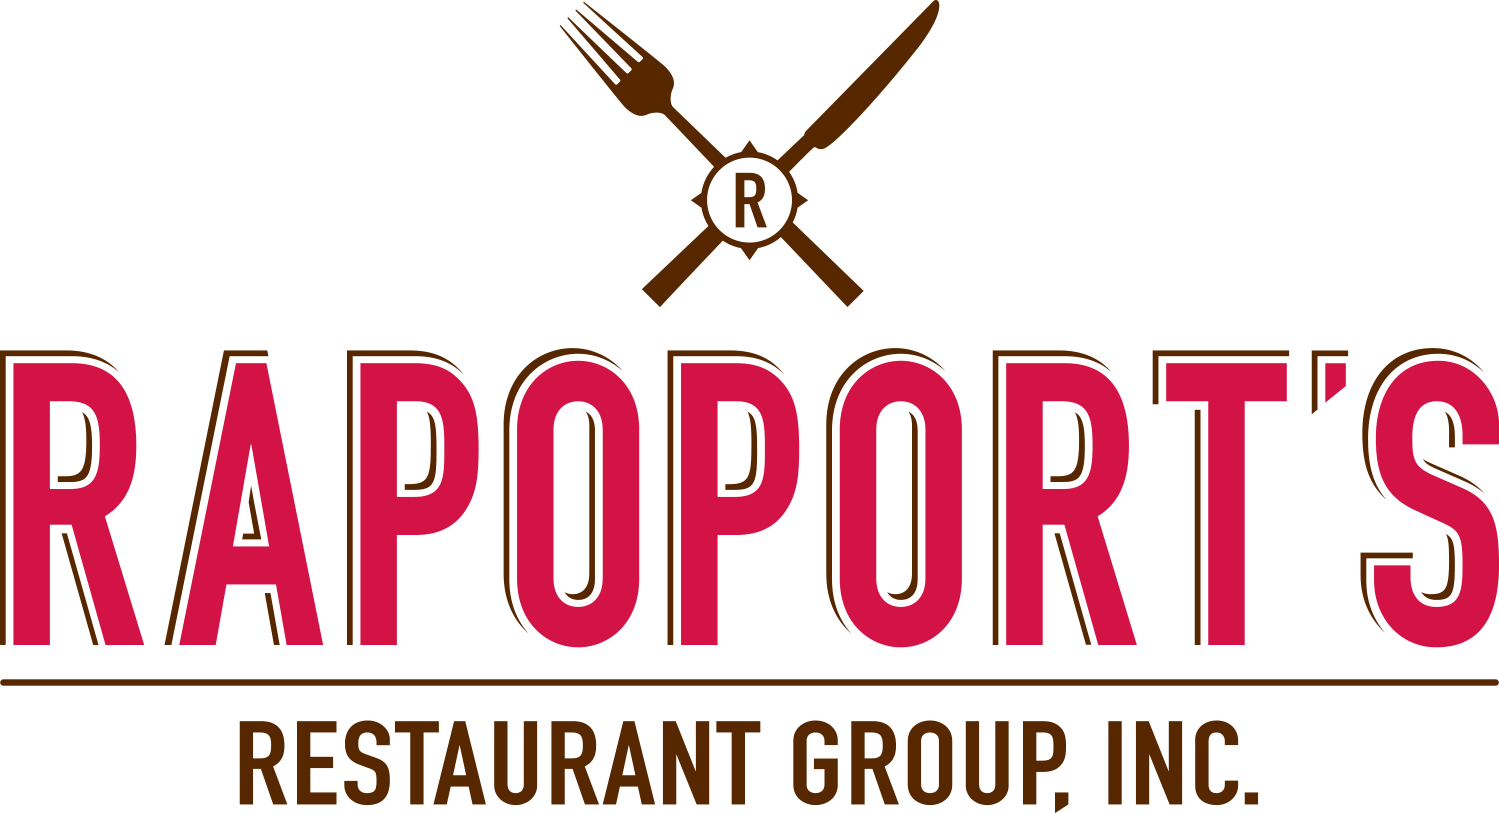 Rapoport’s Restaurant